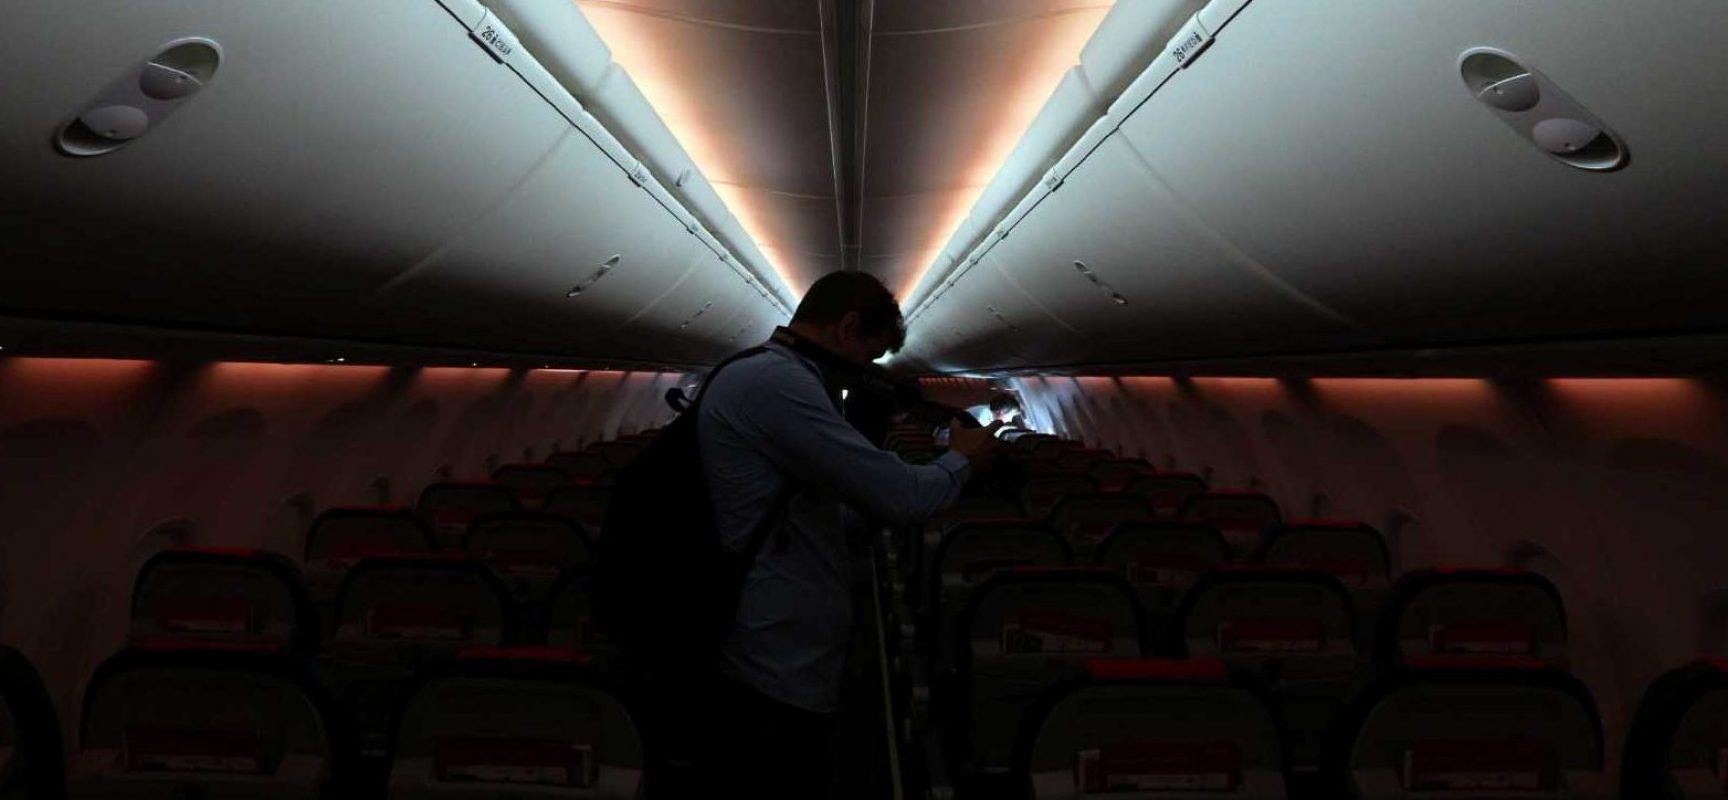 Companhias aéreas estrangeiras de baixo custo começam a entrar no país